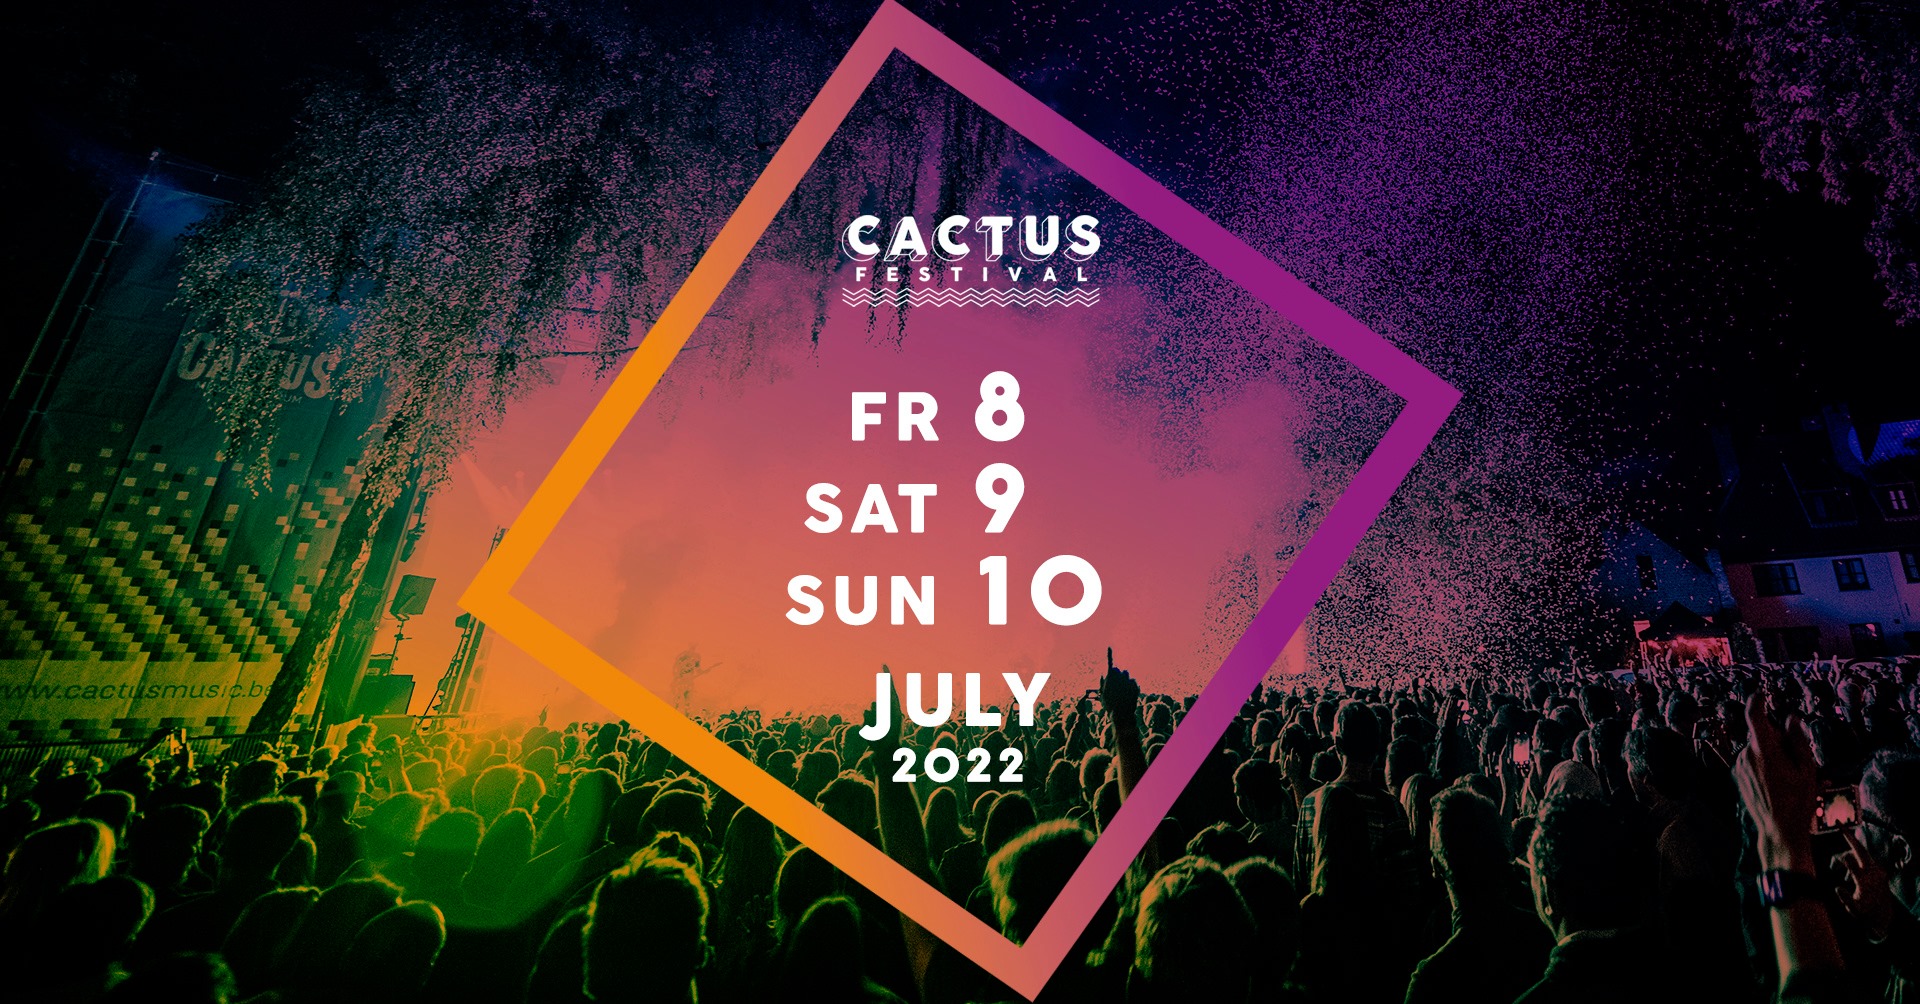 Cactusfestival komt met reeks nieuwe namen!